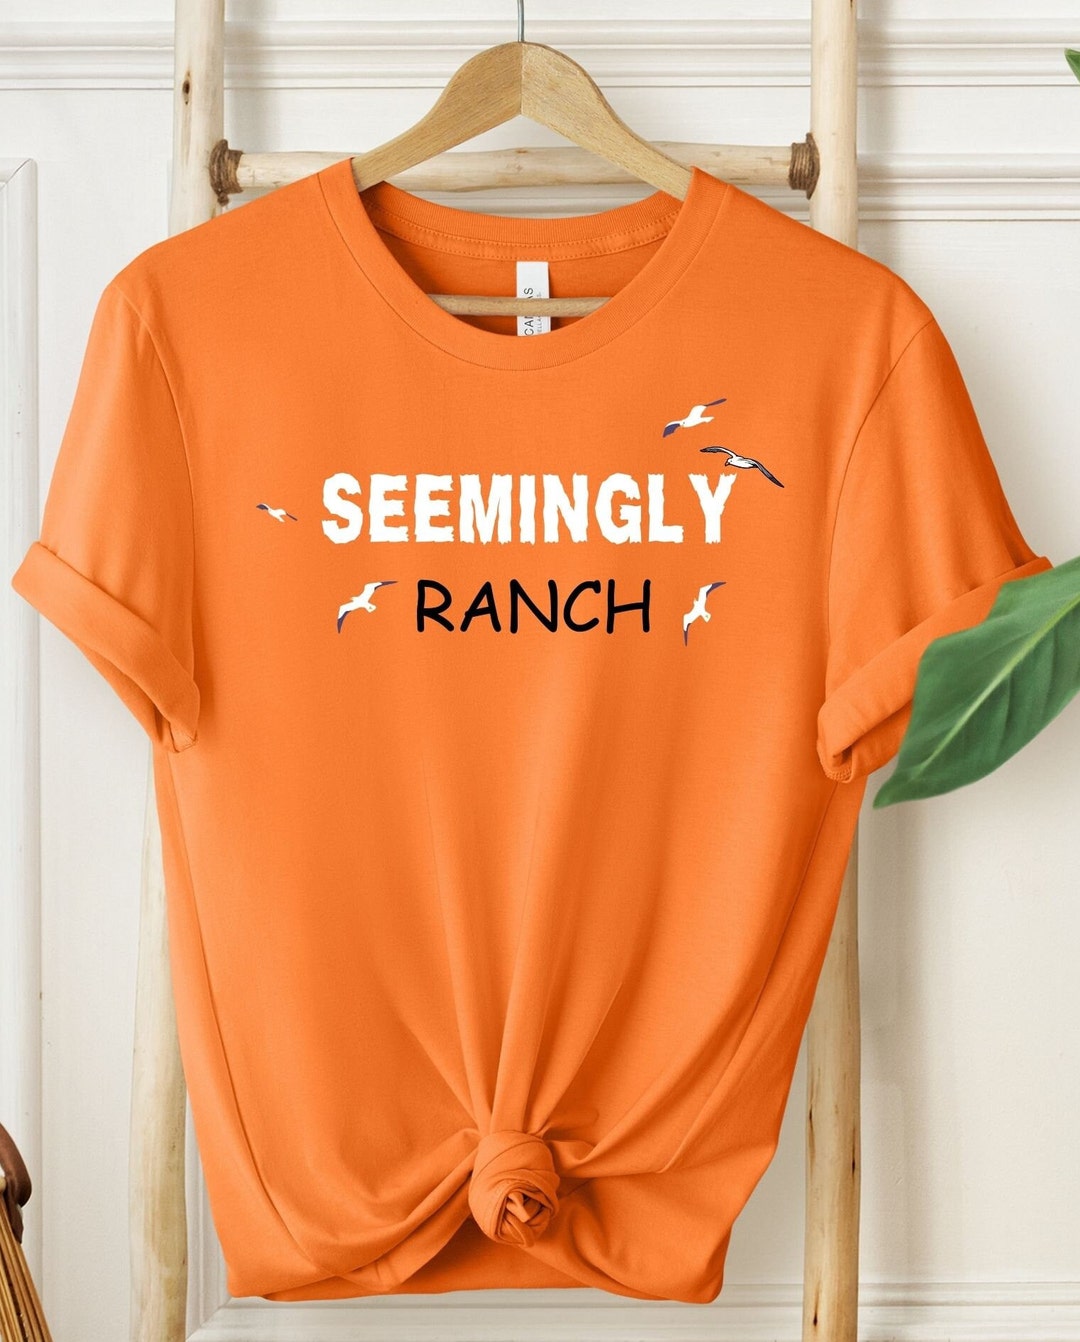 Seemingly Ranch Shirt, Seemingly Ranch Tee, Ranch Shirt, Comfort Colors ...